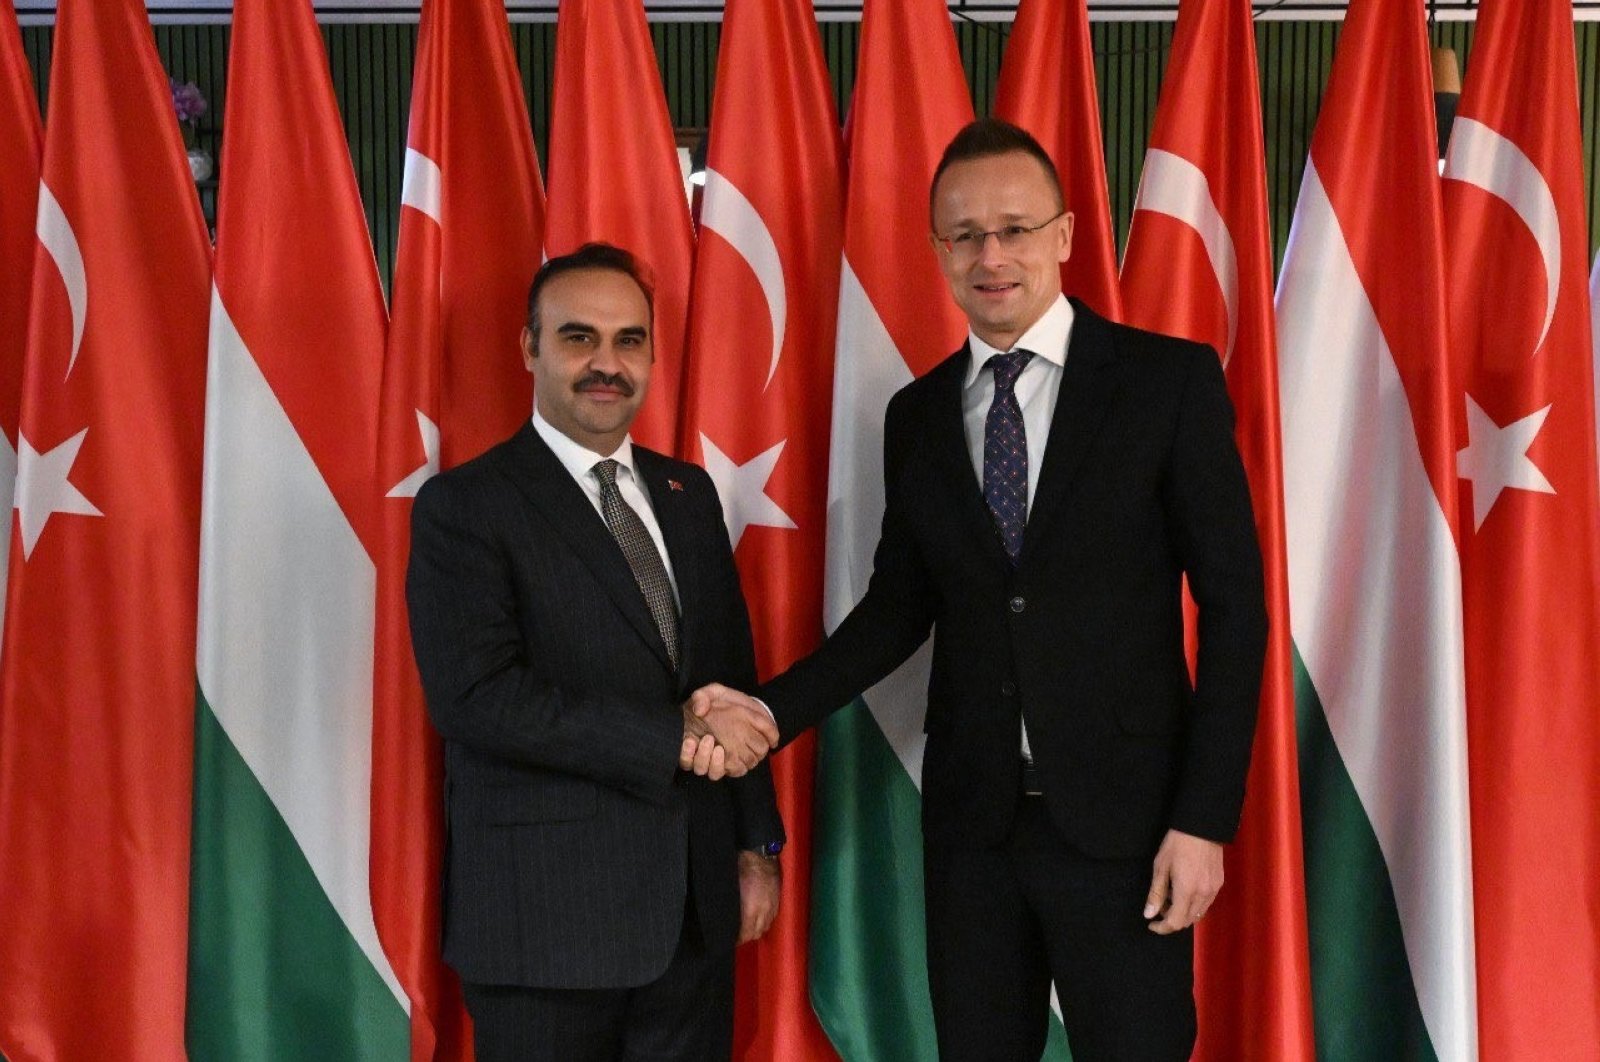 Türkiye, Magyarország 6 milliárd dolláros kereskedelmi forgalomra, erős biztonsági kapcsolatokra törekszik